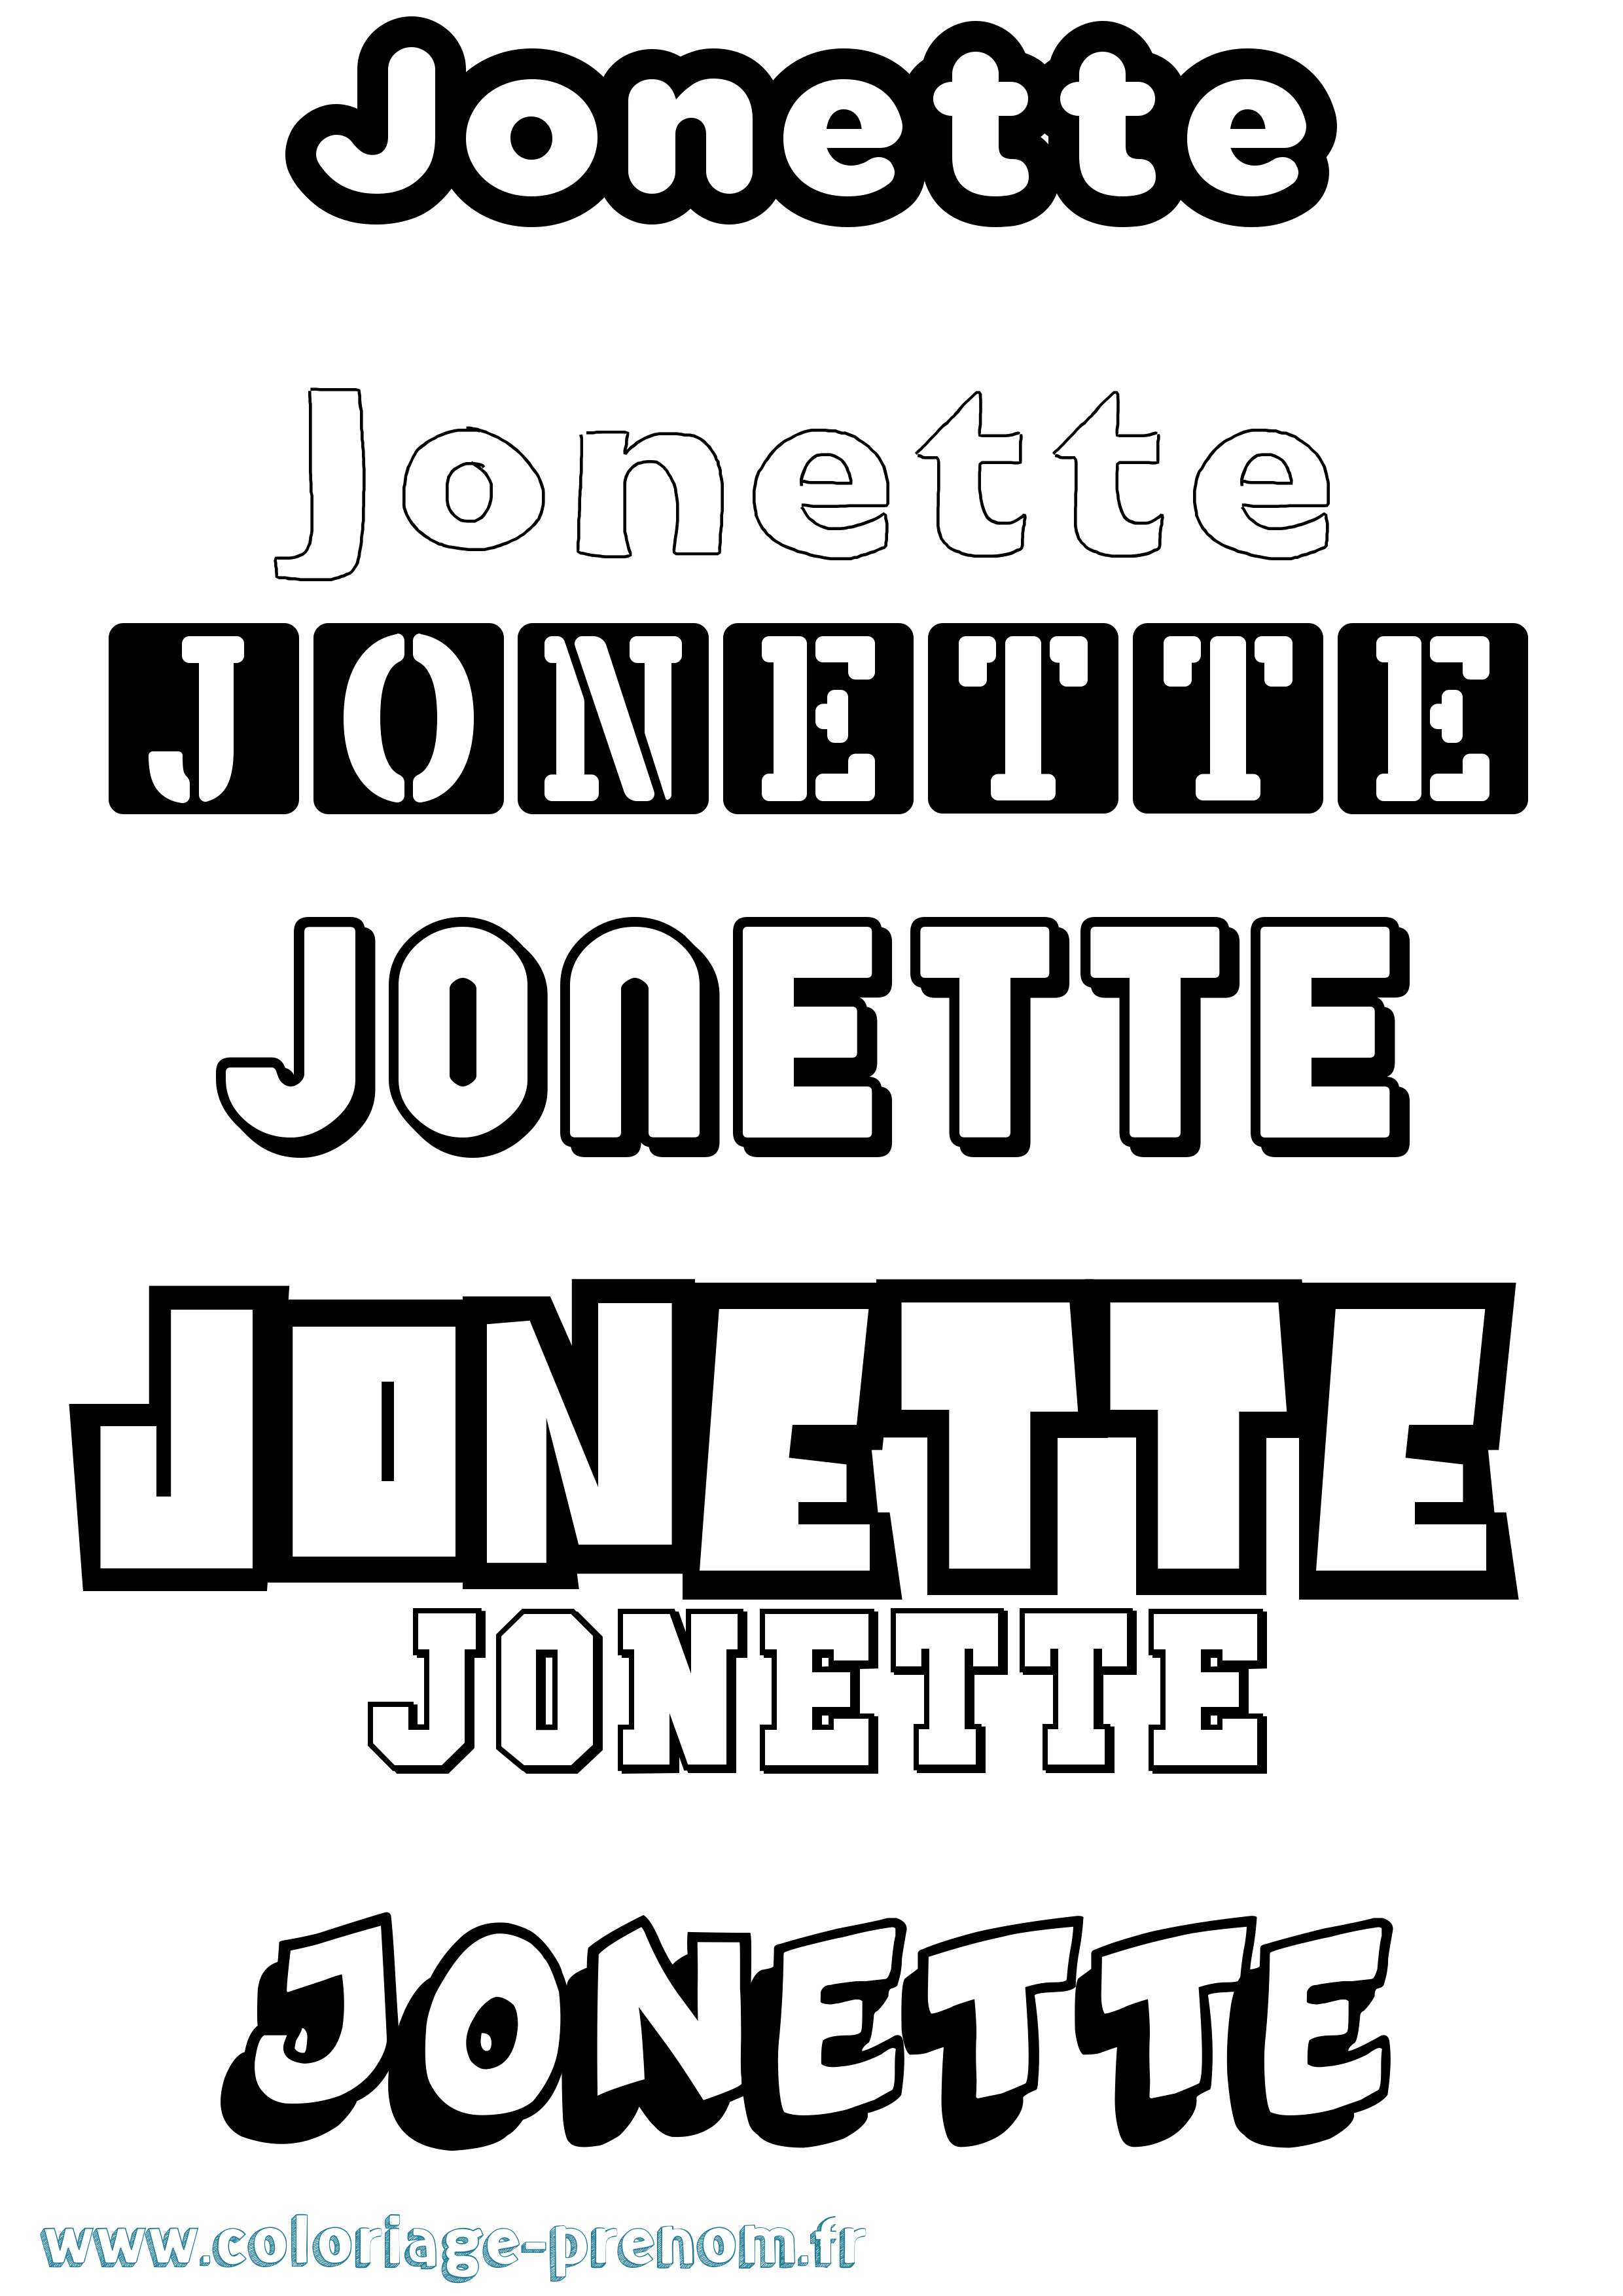 Coloriage prénom Jonette Simple